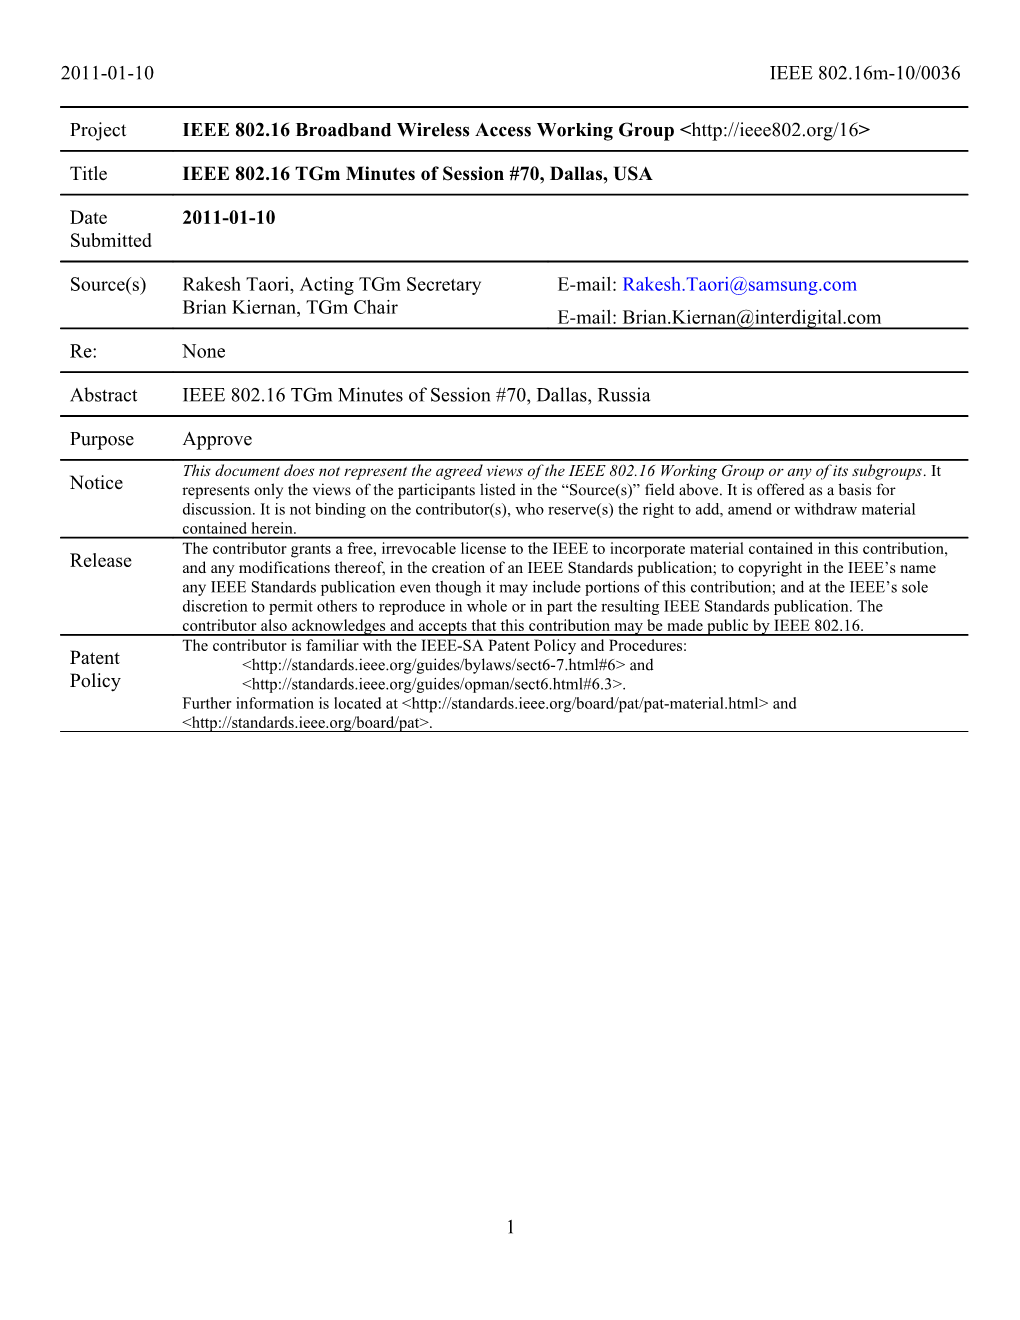 IEEE 802.16 Tgm Minutes Session #70, Dallas, USA